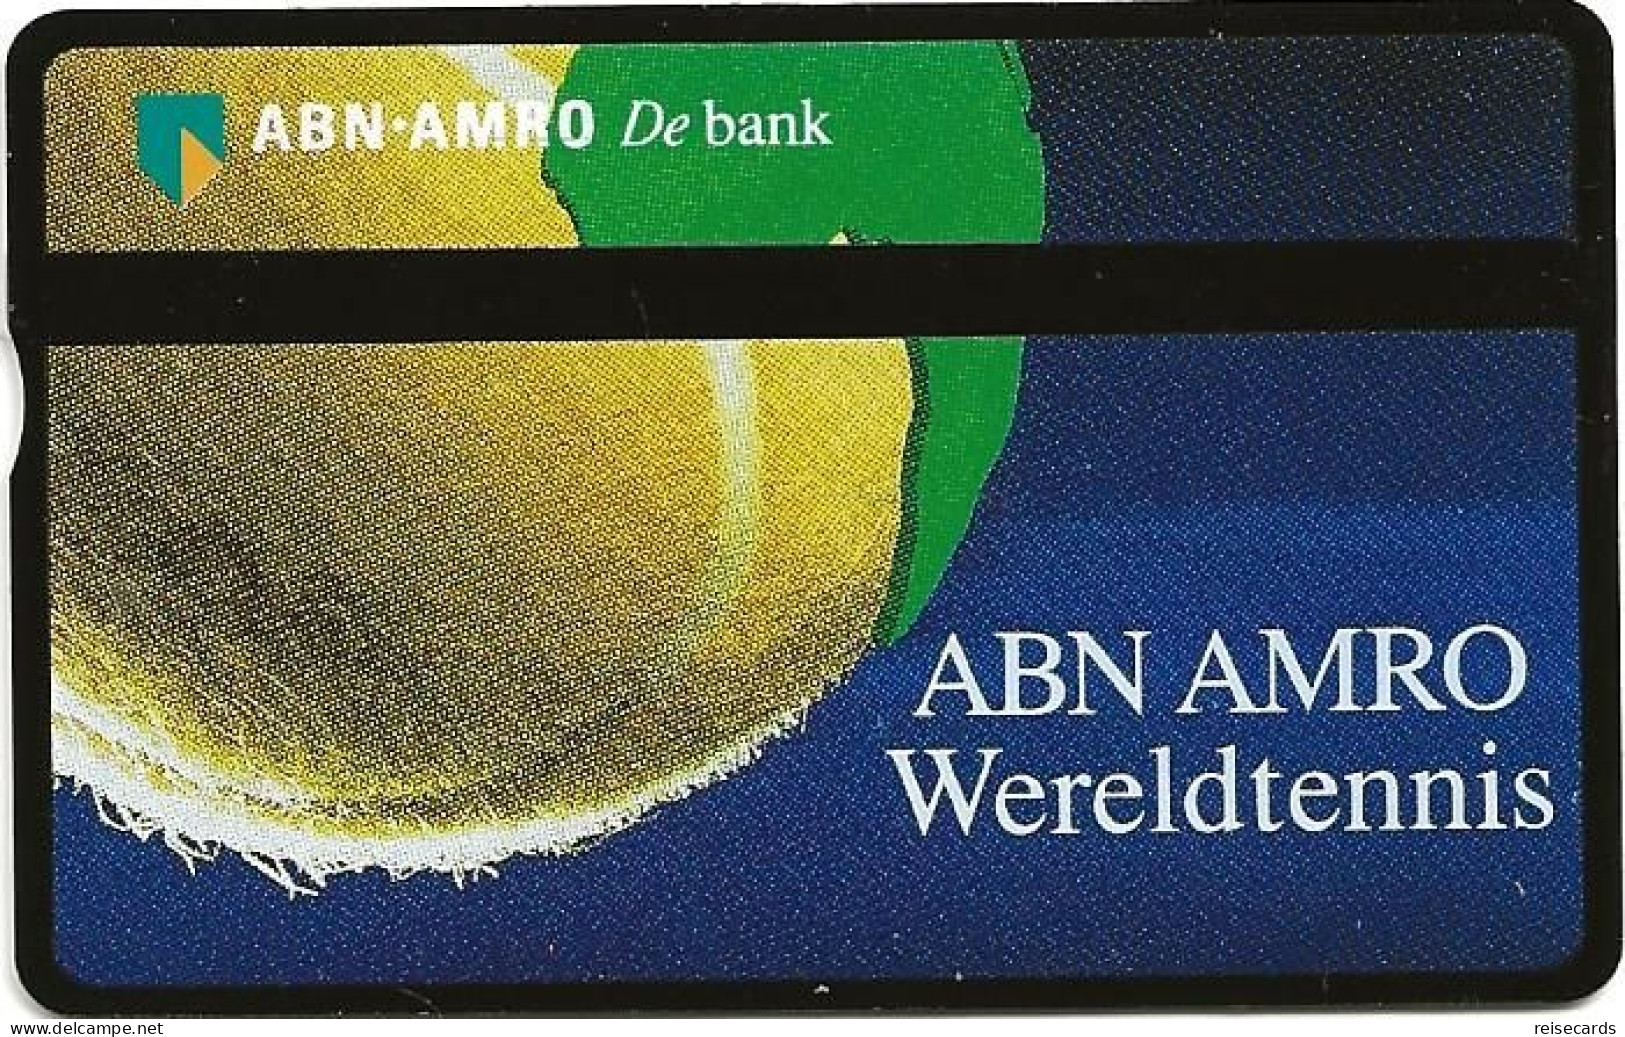 Netherlands: Ptt Telecom - ABN AMRO Bank - Wereldtennis - Publiques